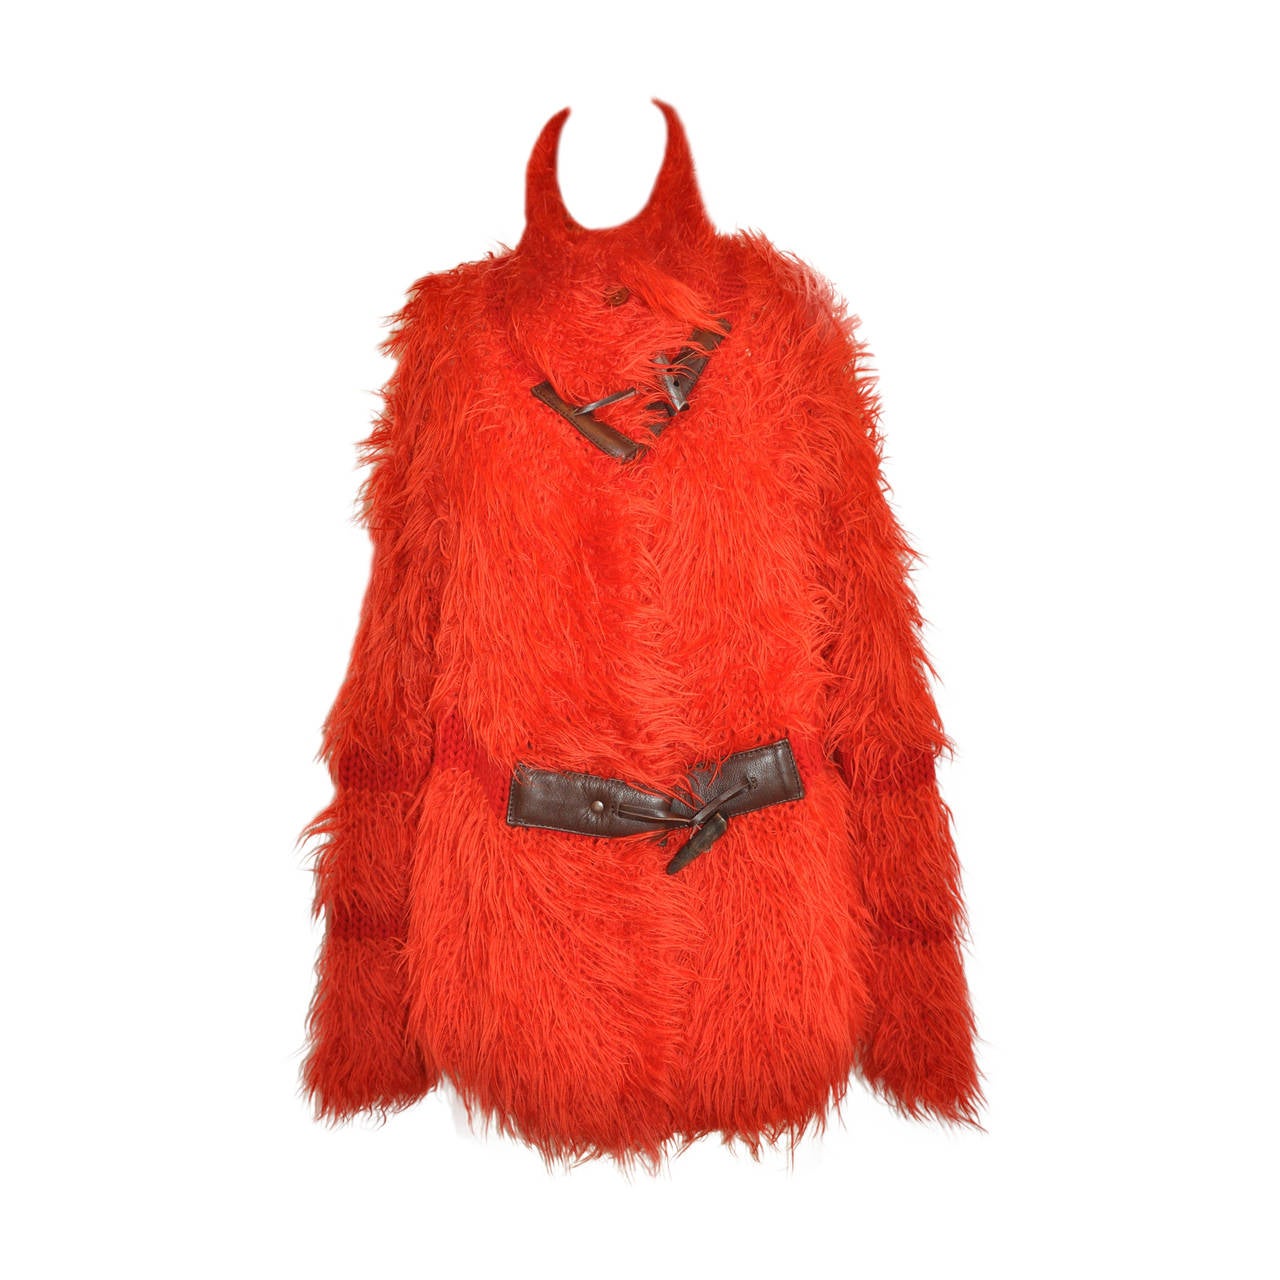 Pulloverjacke von Issey Miyake in kräftigem Rot mit Leder-Akzent